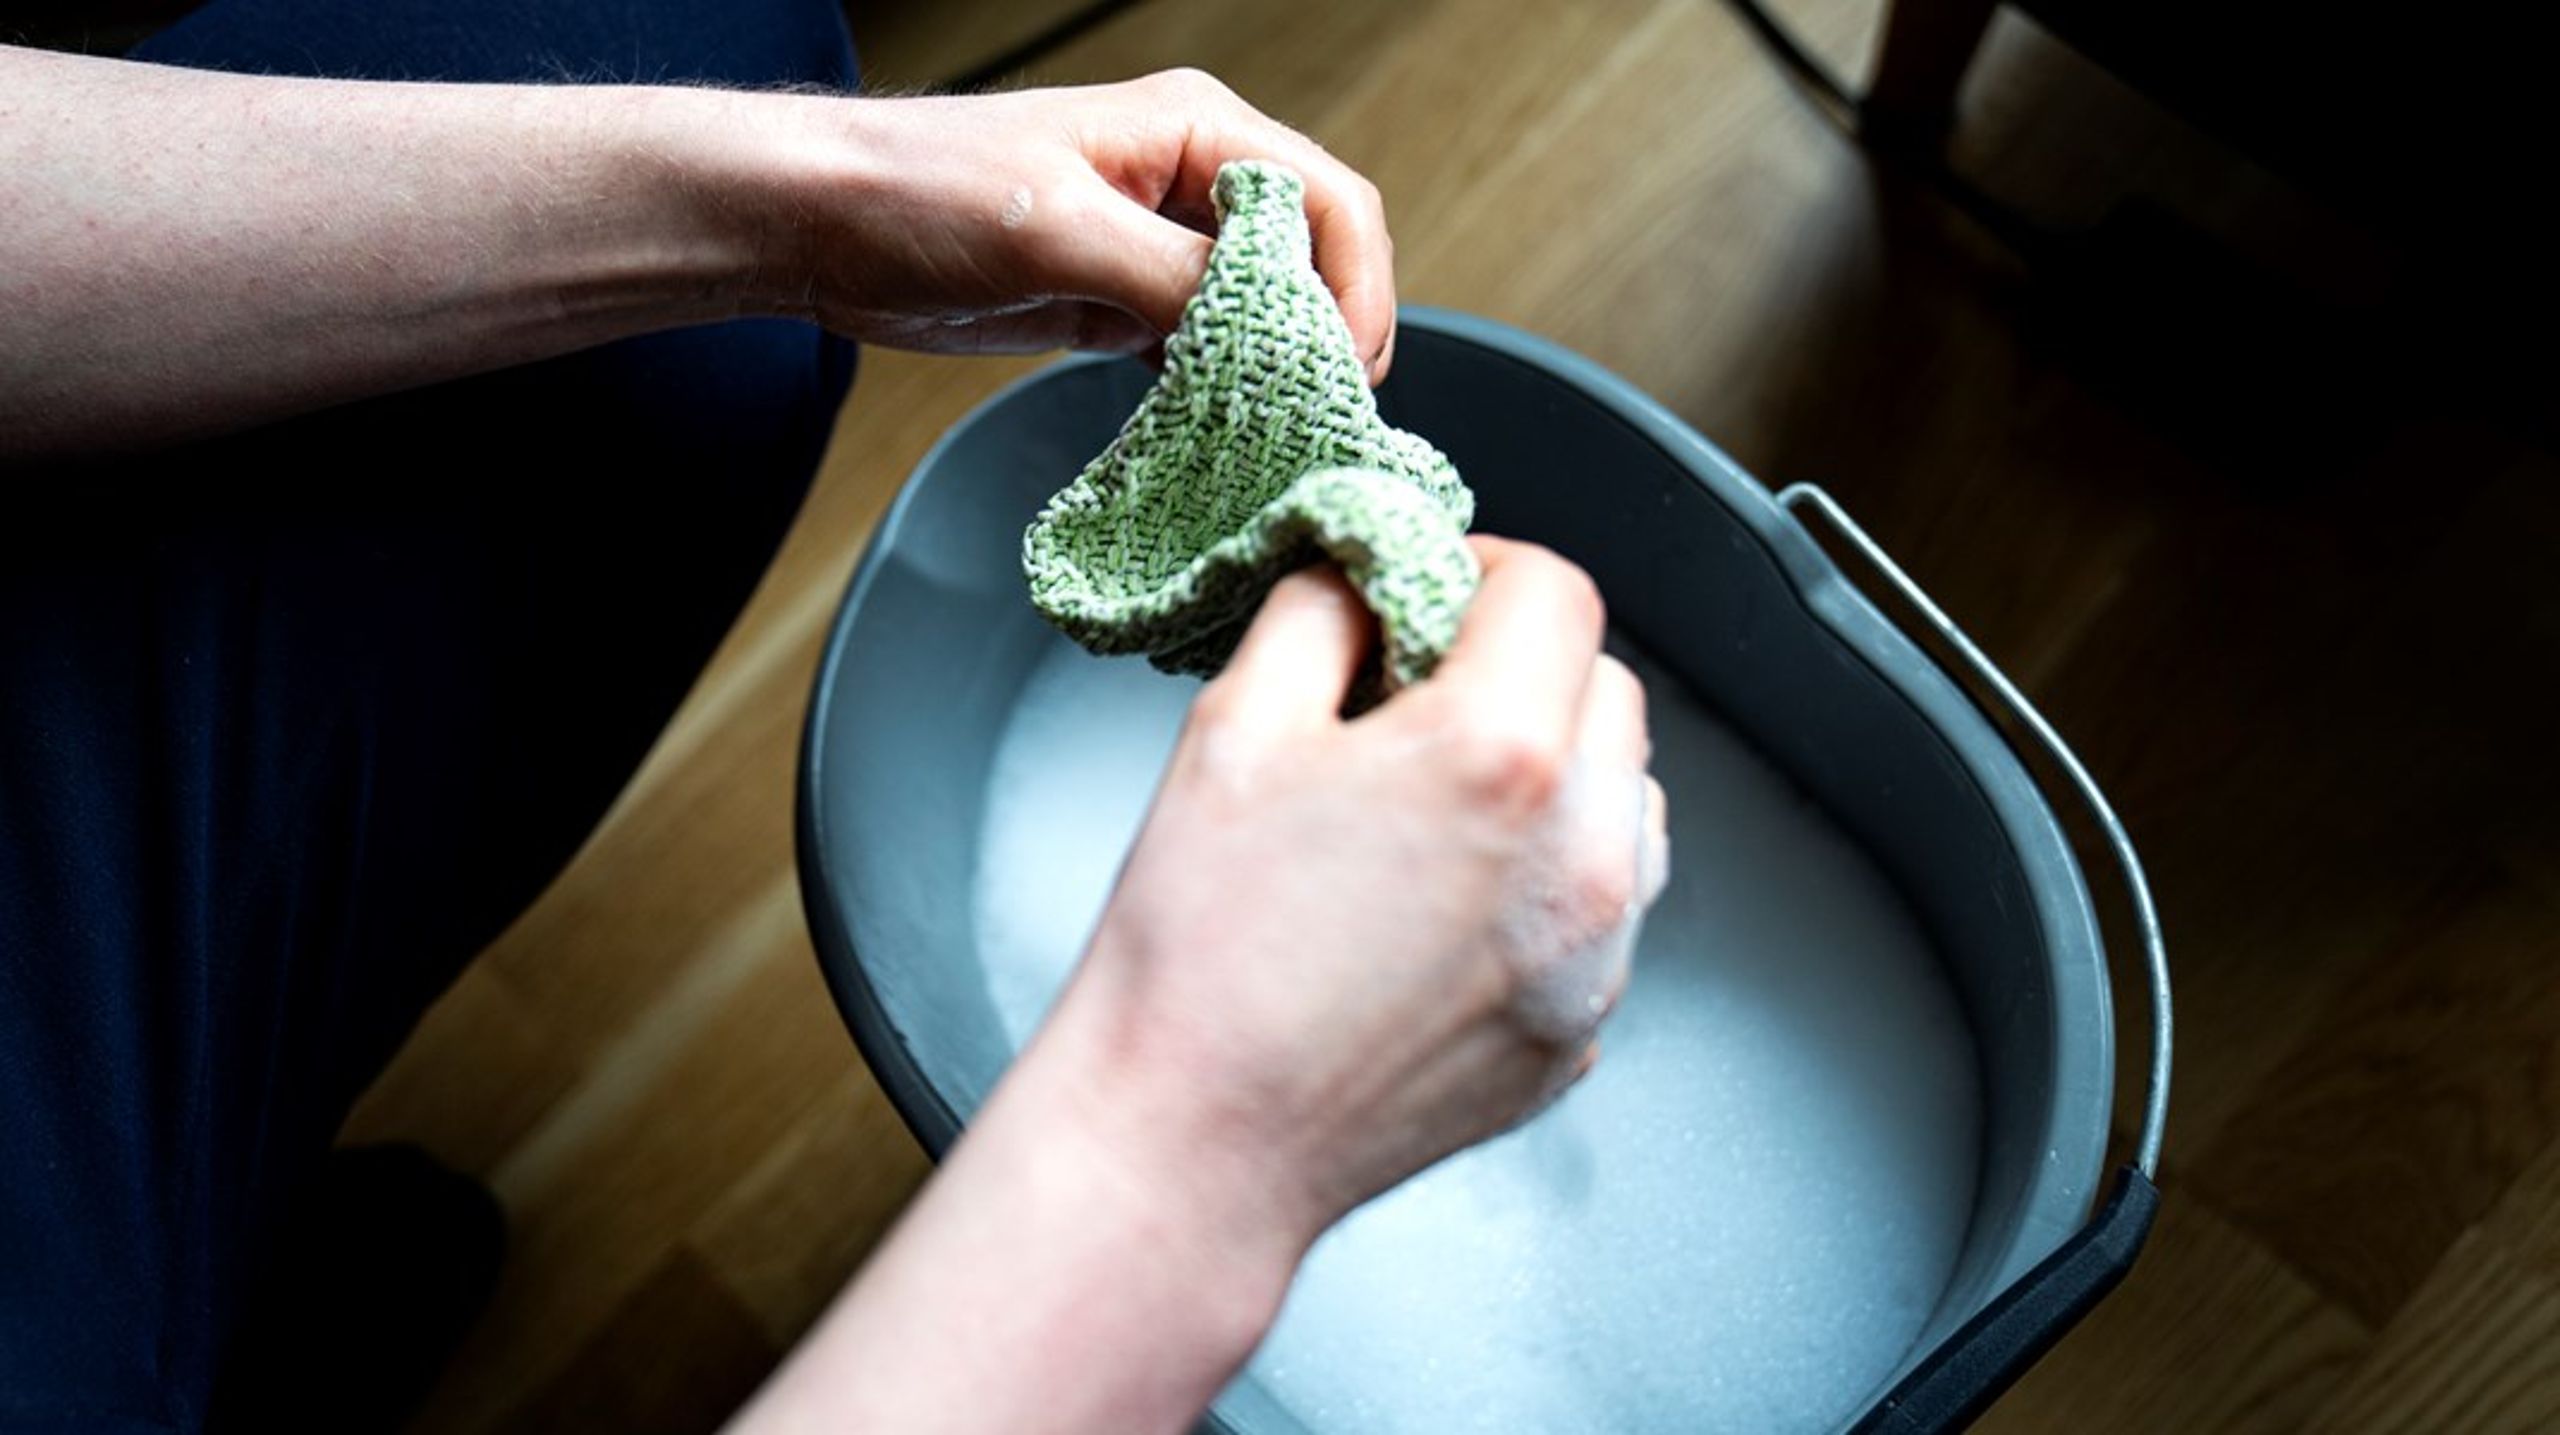 Det er ikke nok af fokusere på bedre håndhygiejne for at nedbringe smitte. Der skal satses langt højere på rengøring, skriver Elisa Rimpler, Gordon Ørskov Madsen og Lydia Callesen. (Foto: Ida Guldbæk Arentsen/Ritzau Scanpix)